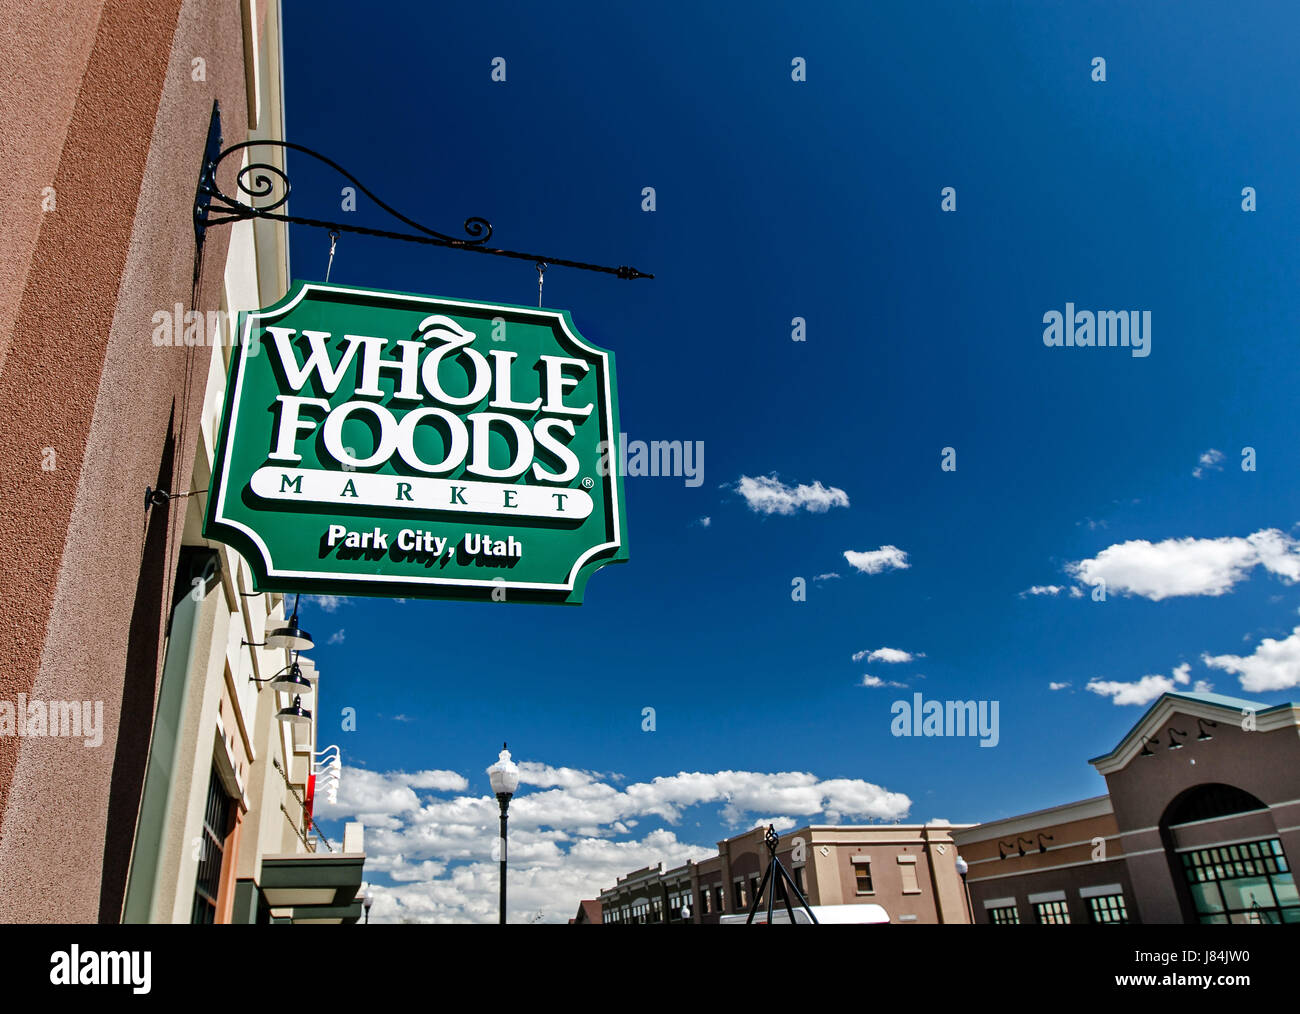 Park City, UT, 12 Maggio 2017: Whole Foods Market segno è sospeso mediante un ingresso al negozio di alimentari. Foto Stock